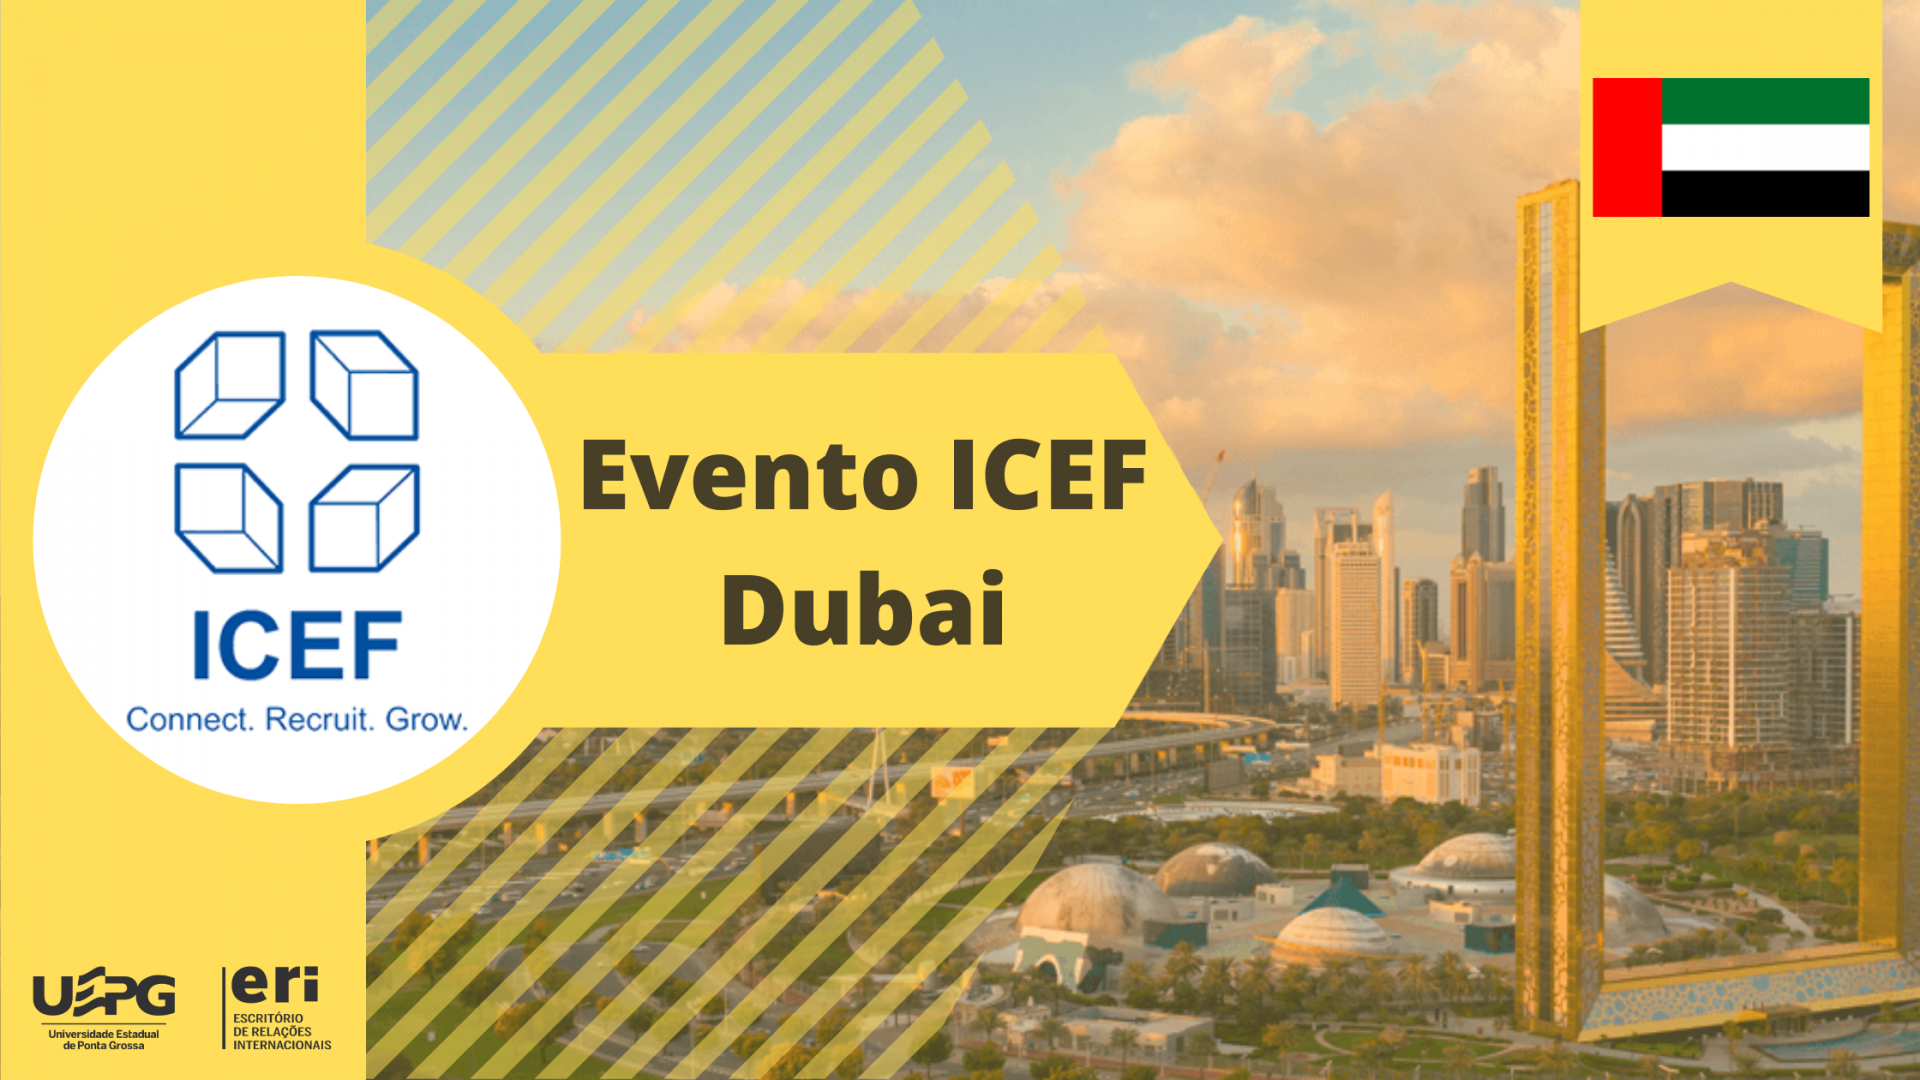 Evento ICEF DUBAI Escritório de Relações Internacionais